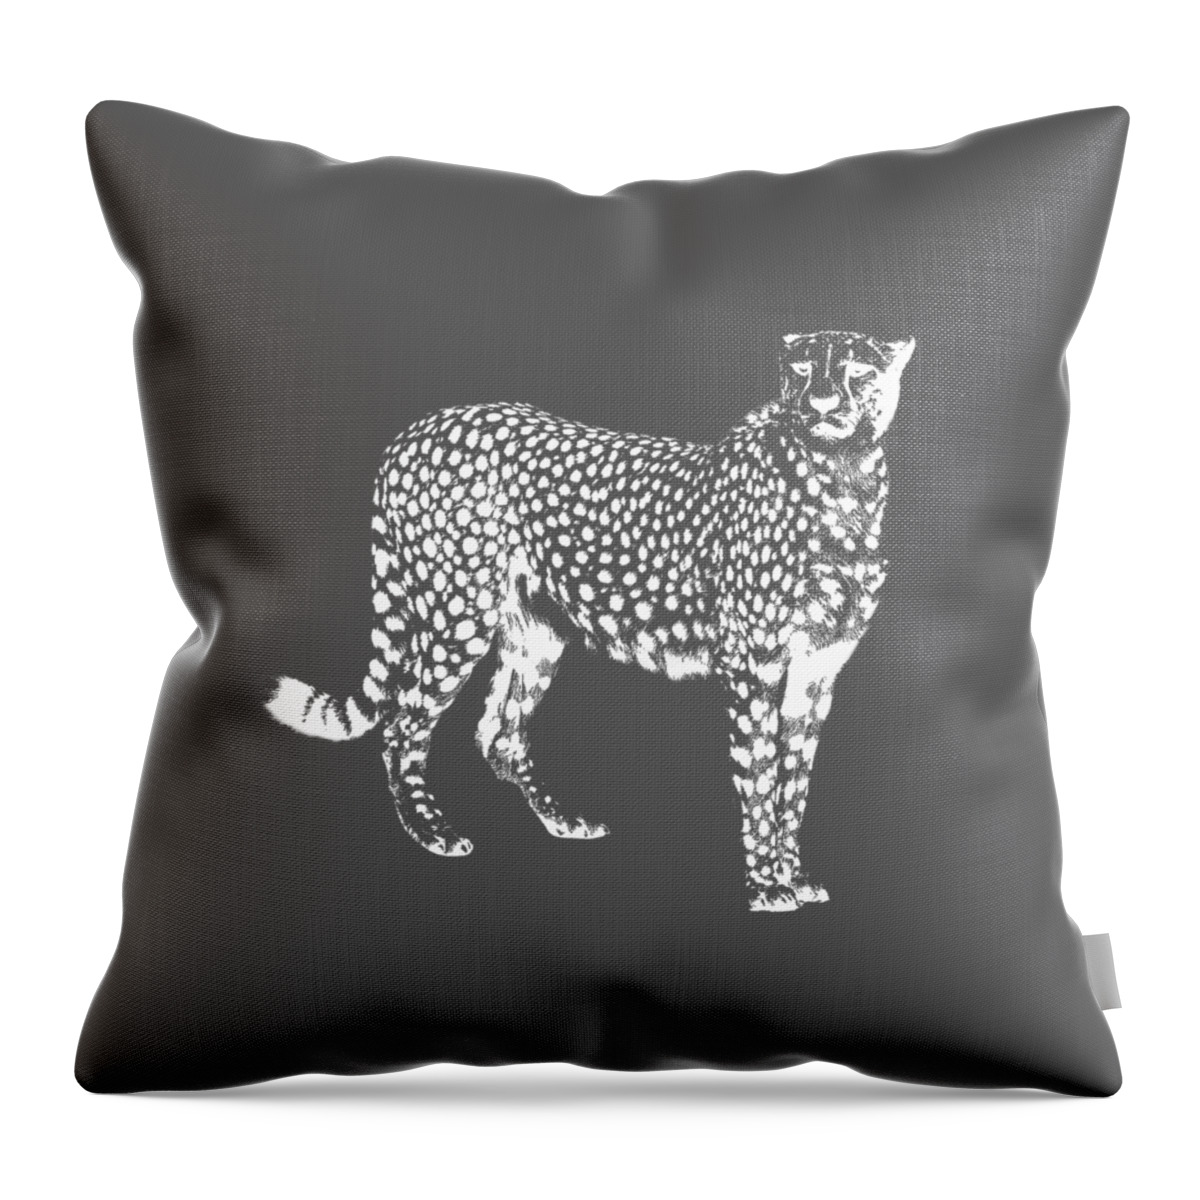 Cheetah Throw Pillow featuring the photograph Cheetah Cut Out White by Greg Noblin